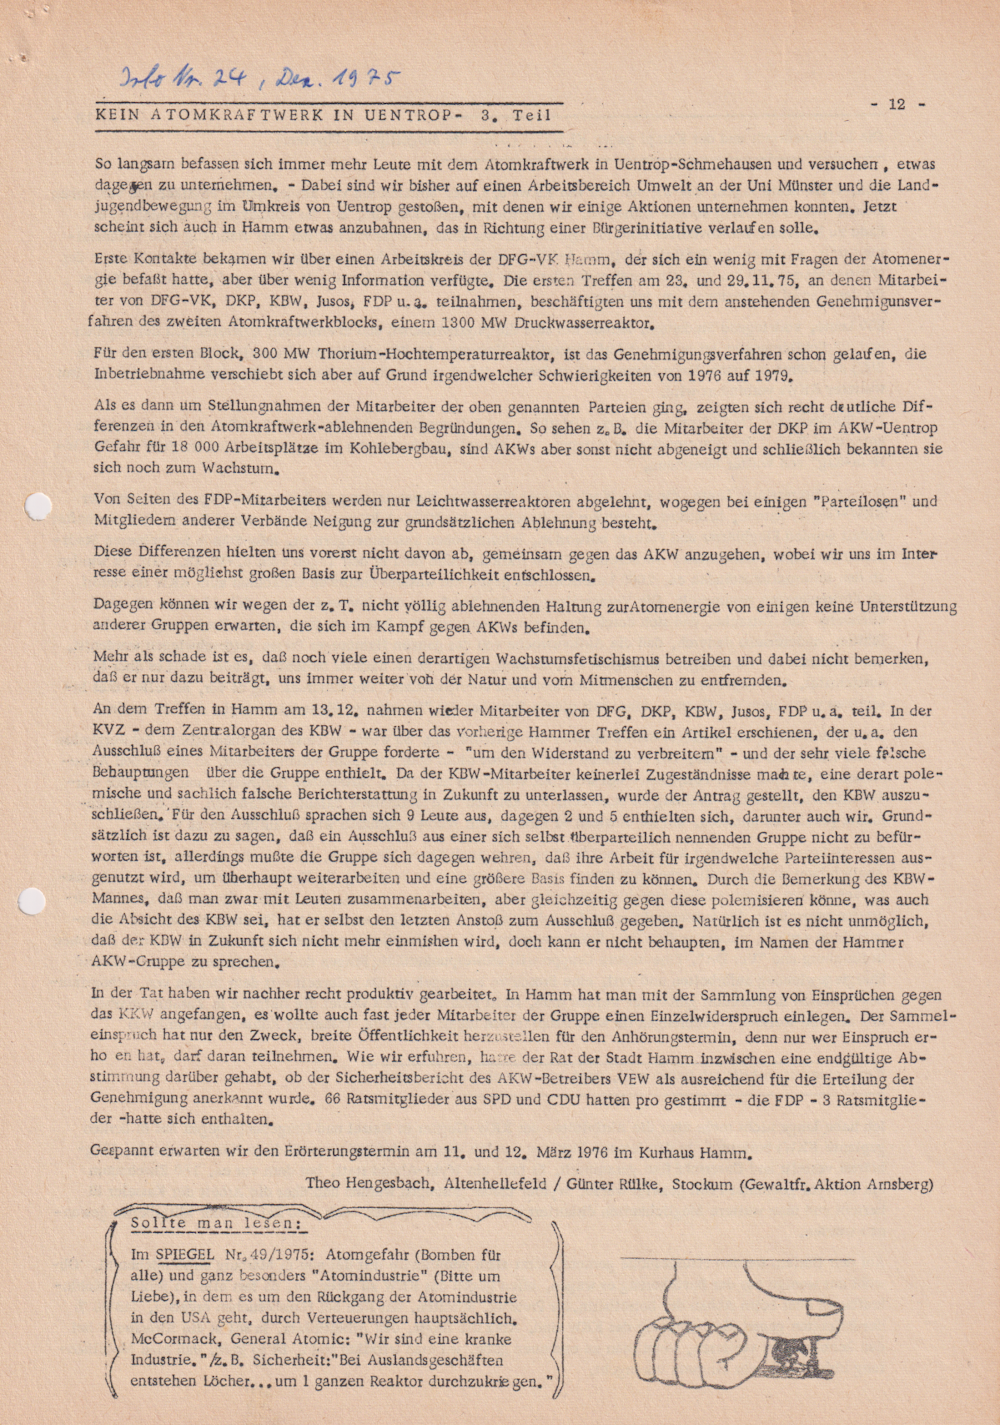 Informationsdienst für gewaltfreie Organisatoren, „Kein Atomkraftwerk in Uentrop" Teil 3, Dezember 1975, Heft 24